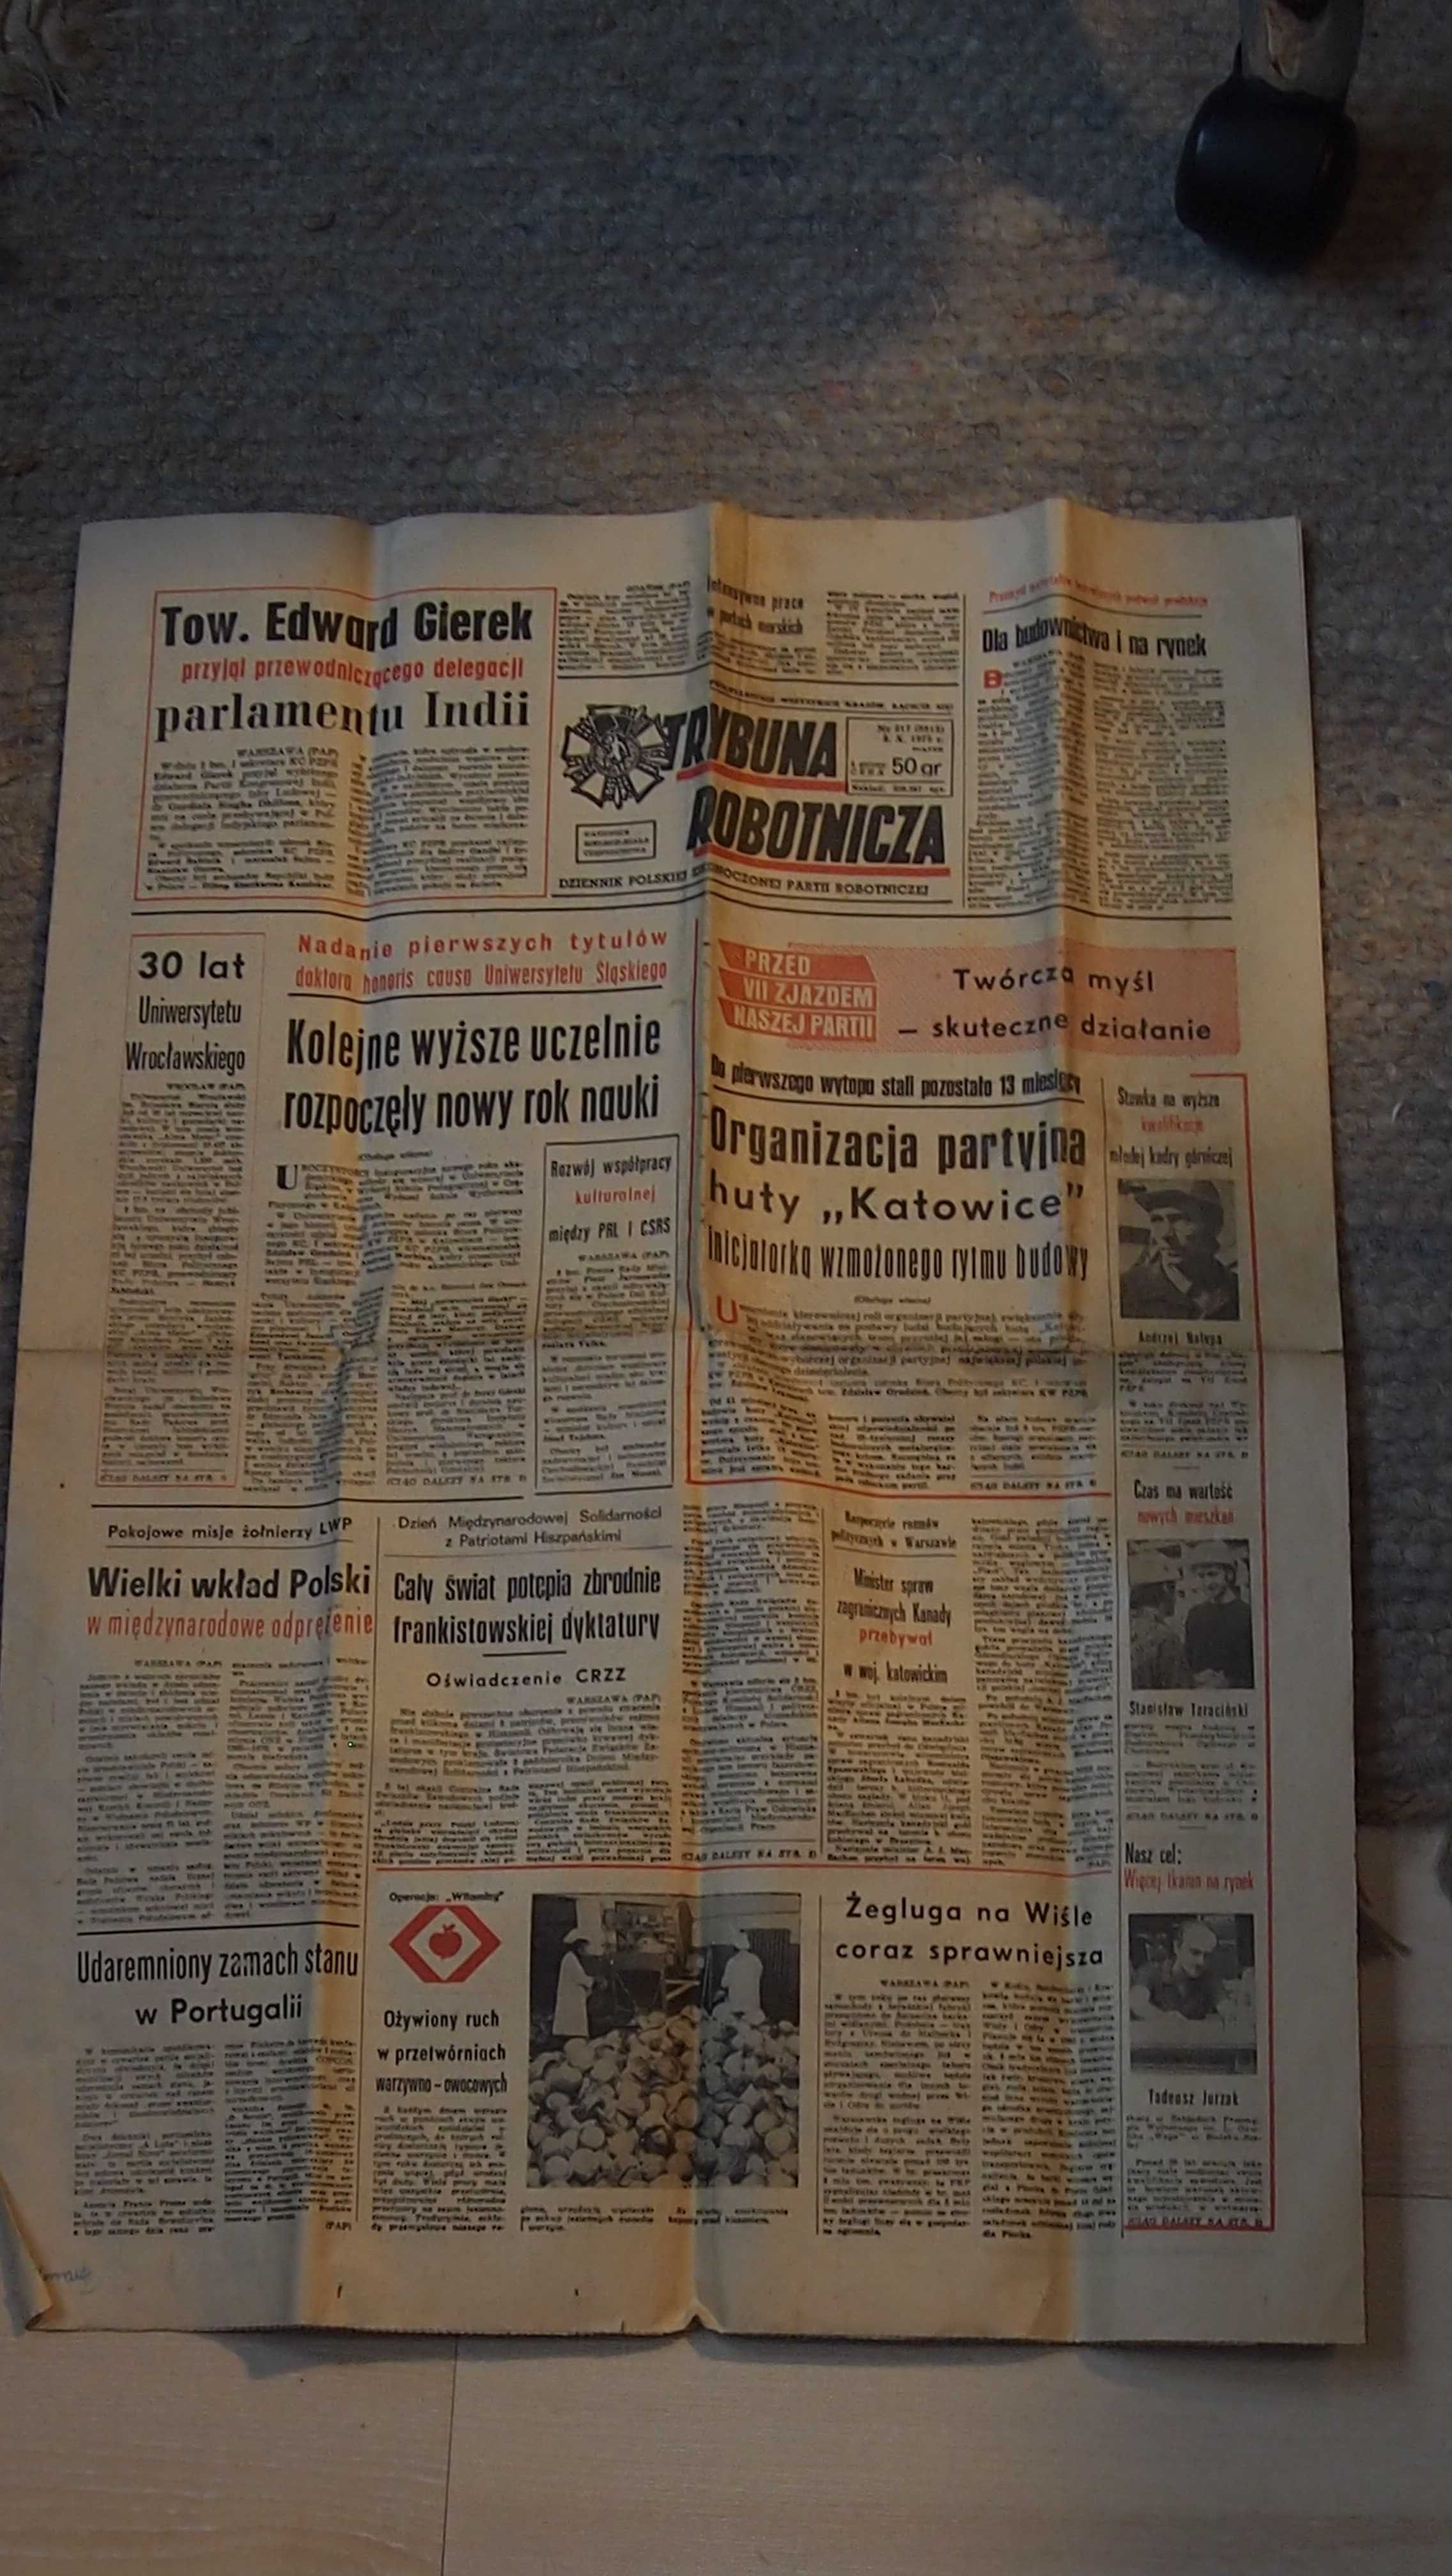 Trybuna Robotnicza, Dziennik PZPR, Nr 217 (9813), 3. X. 1975 r.